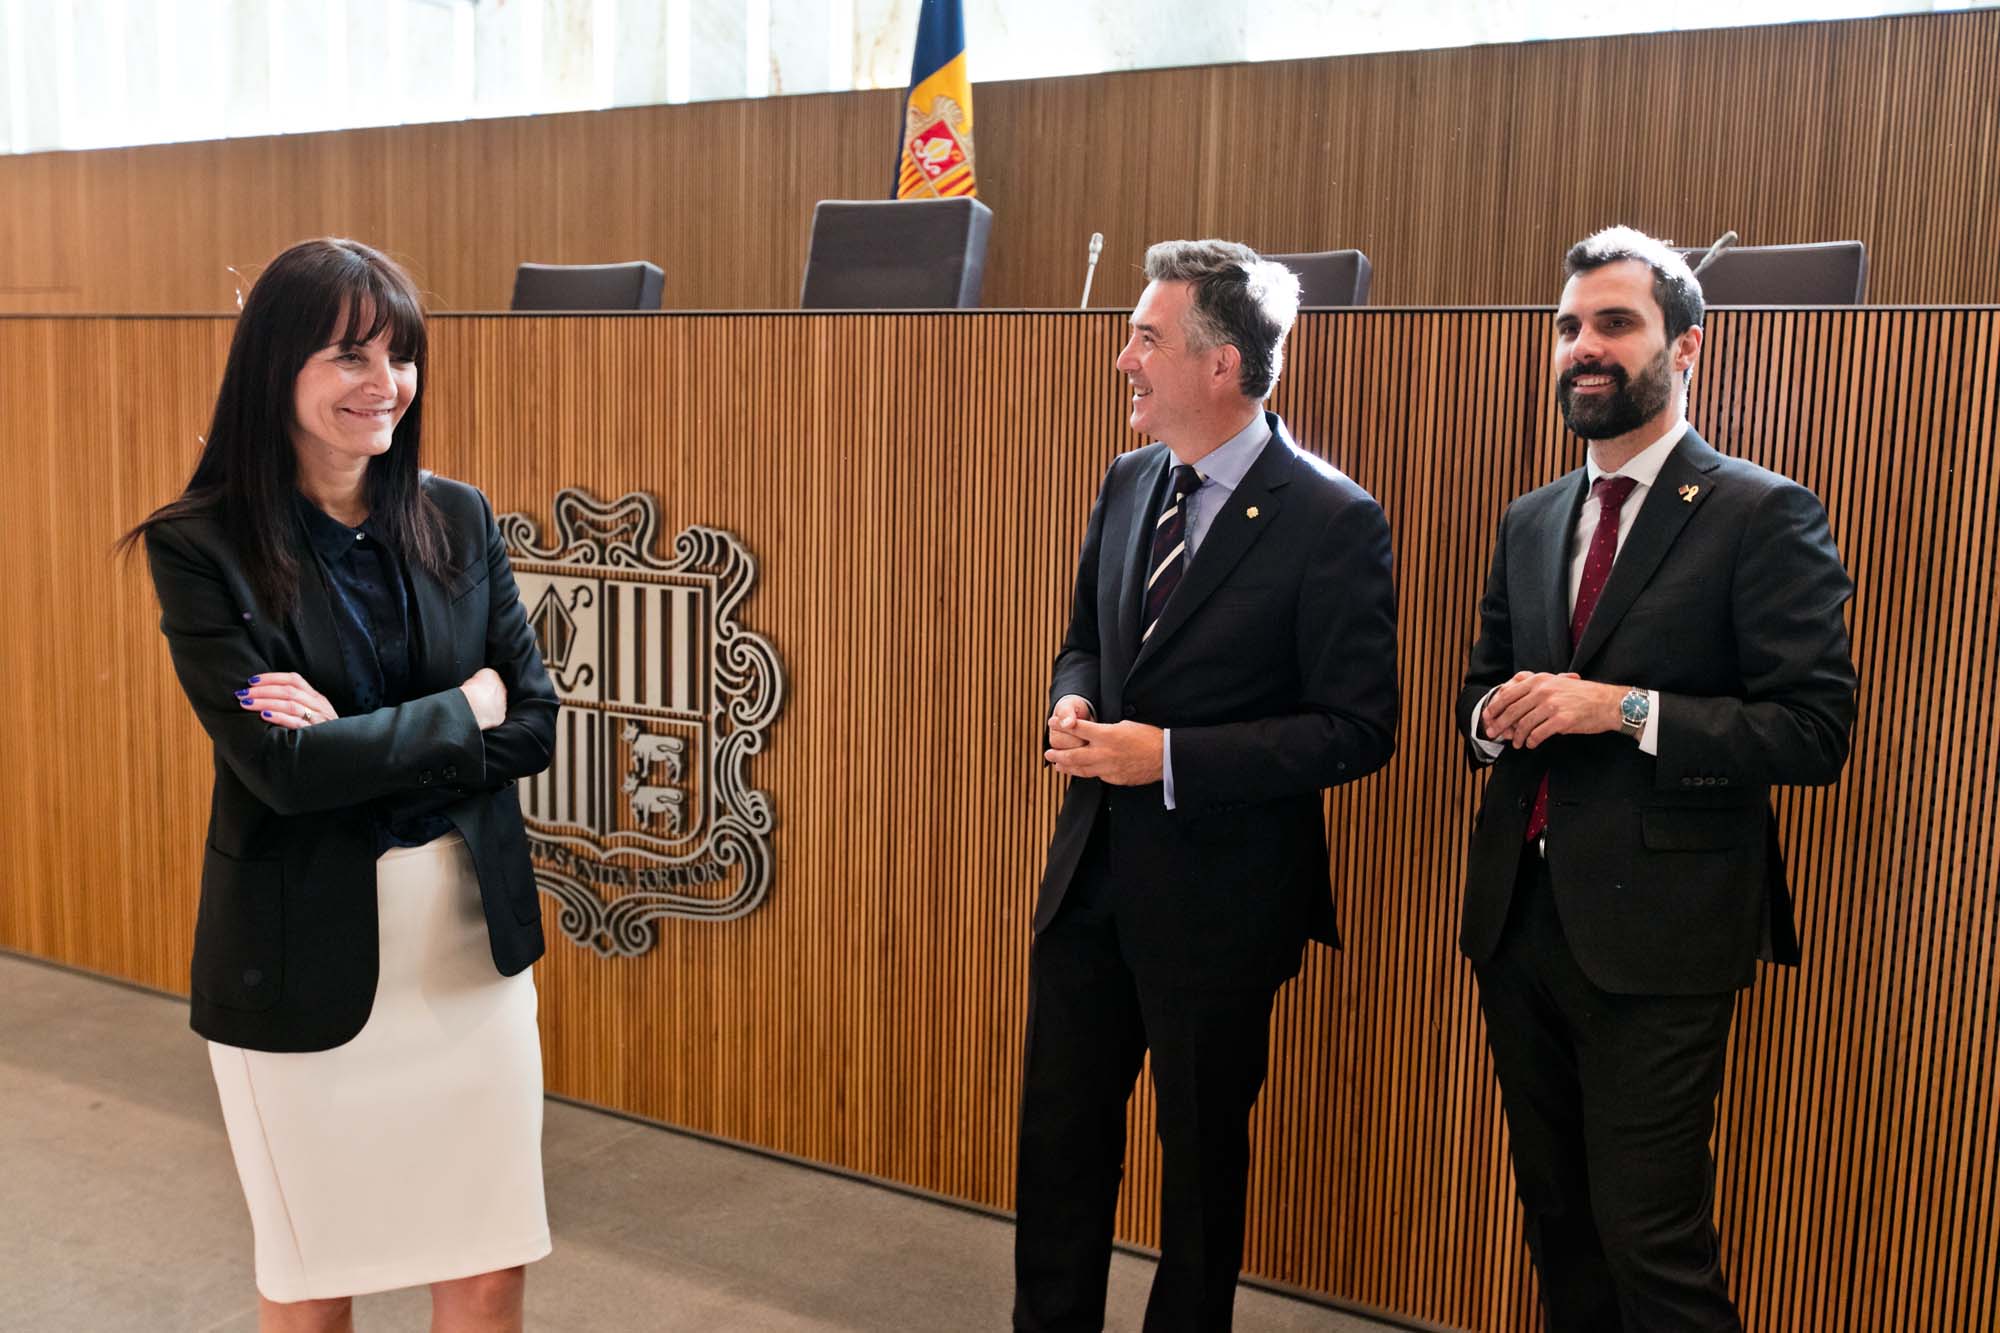 El president del Parlament de Catalunya visita el Consell General i la Casa de la Vall